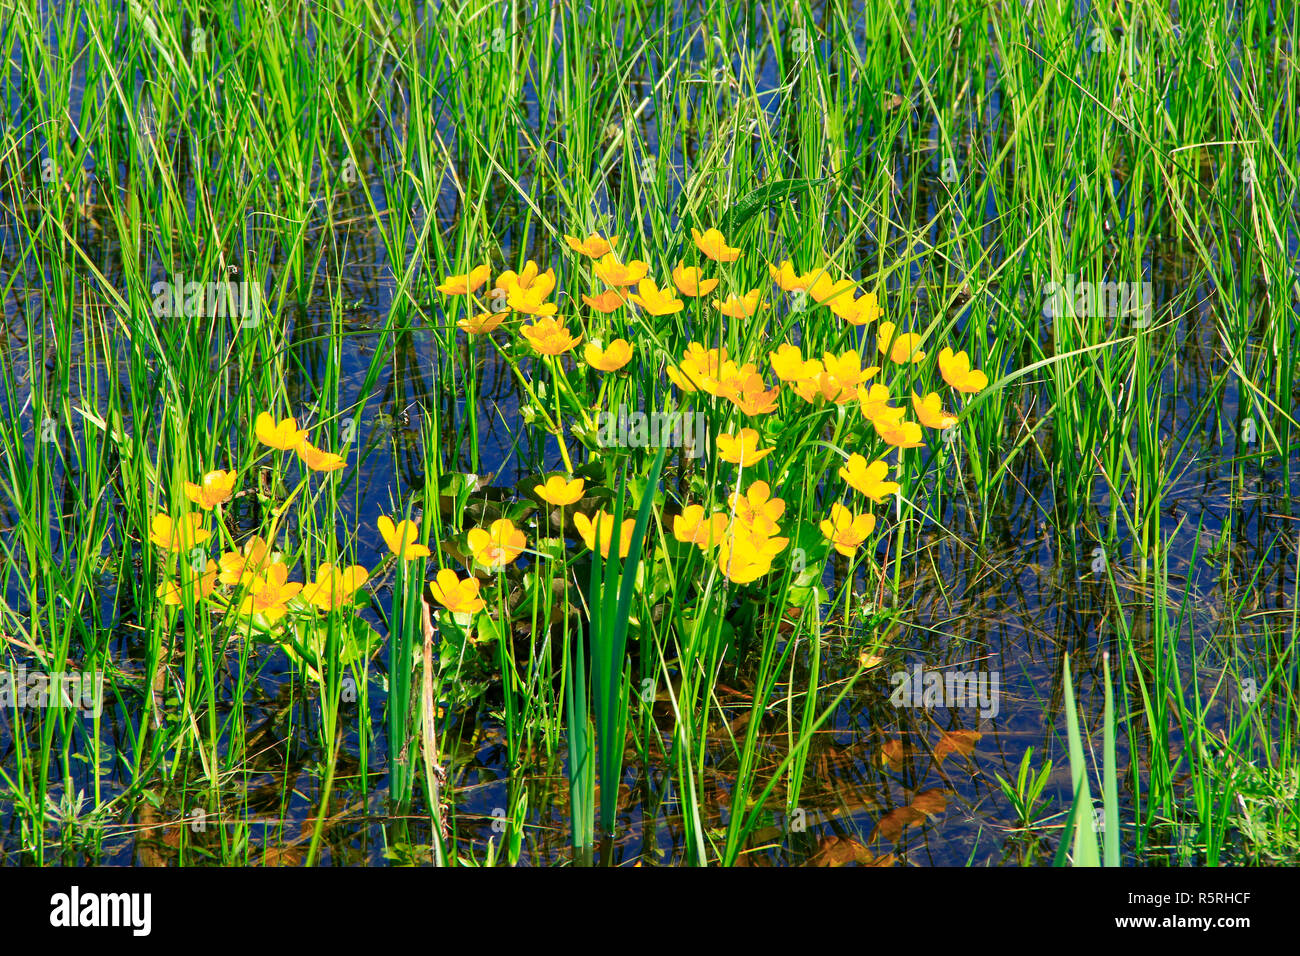 Caltha palustris im Sumpf wächst. Frühling Blumen. Sumpfdotterblume Blumen. Gelbe Blumen von Sumpfdotterblume. Blüte Farbe gold Pflanzen in frühen spri Stockfoto